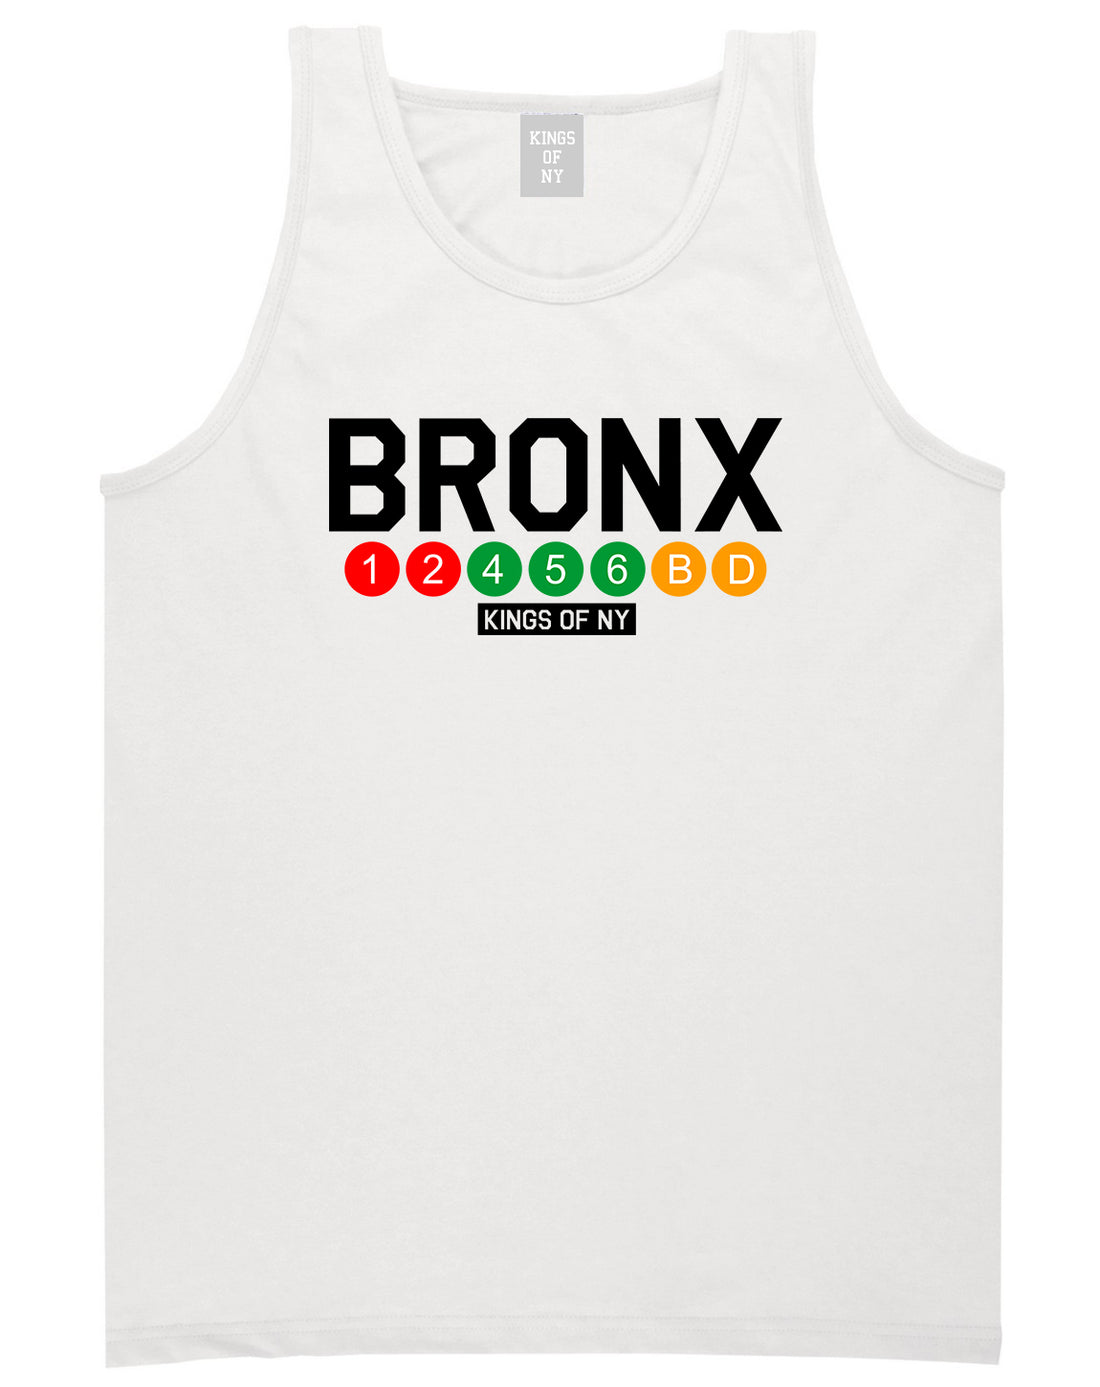 Bronx Transit Logos Tank Top Shirt in White